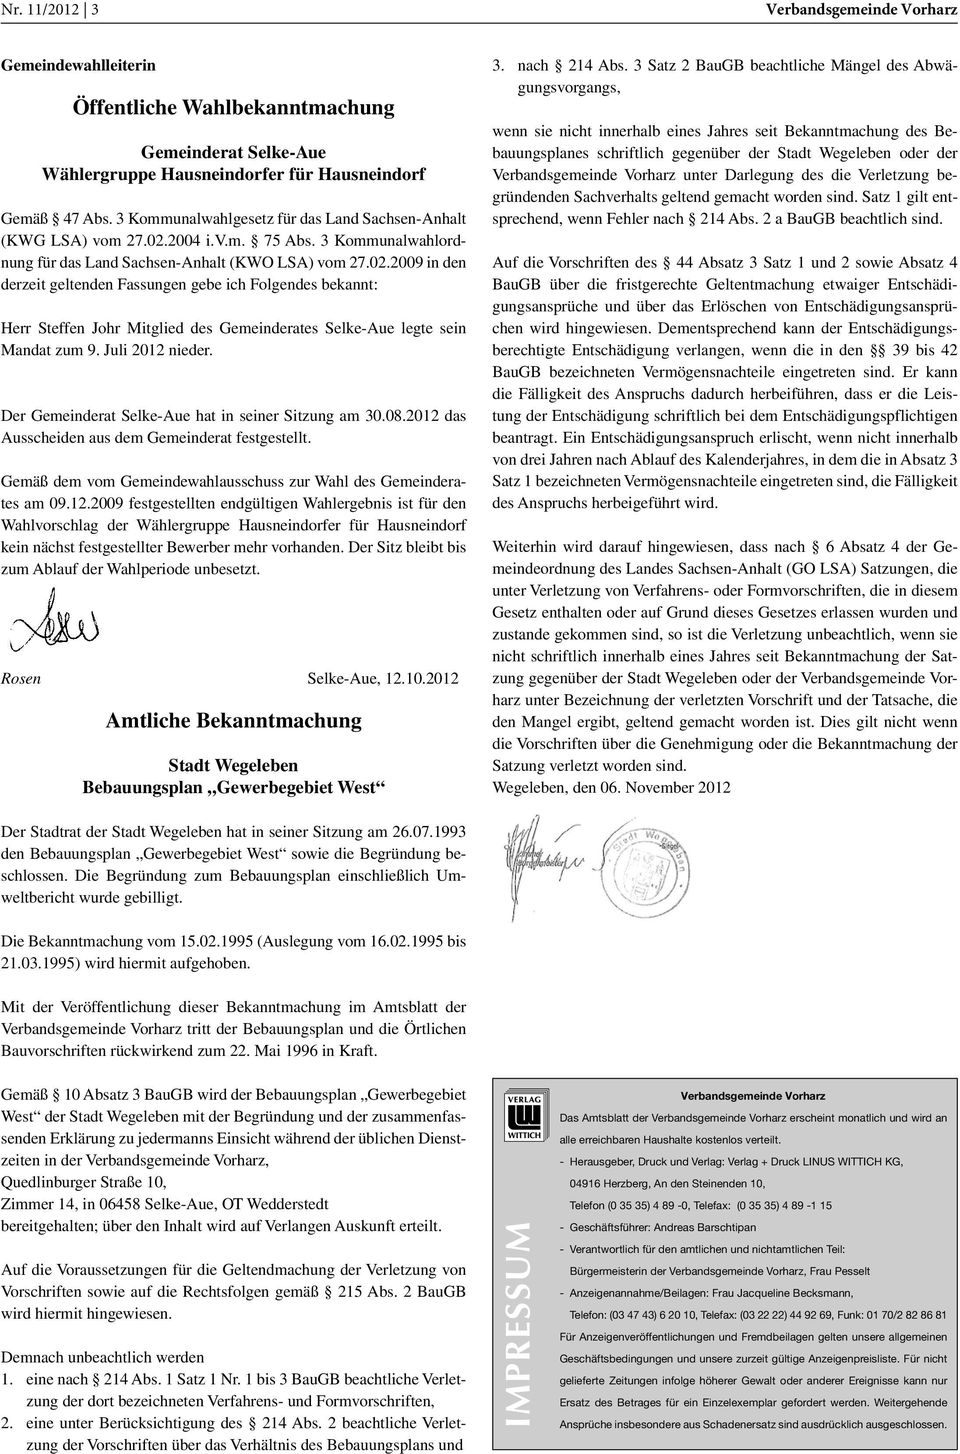 2004 i.v.m. 75 Abs. 3 Kommunalwahlordnung für das Land Sachsen-Anhalt (KWO LSA) vom 27.02.